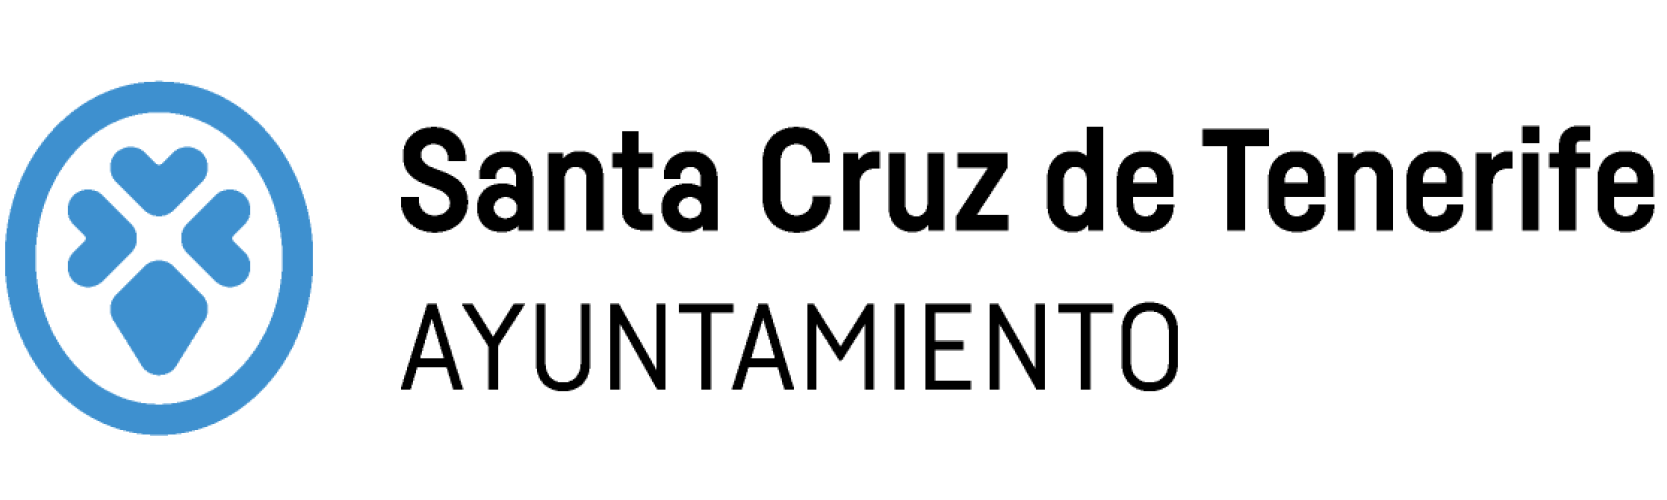 Logo Ayuntamiento de Santa Cruz de Tenerife